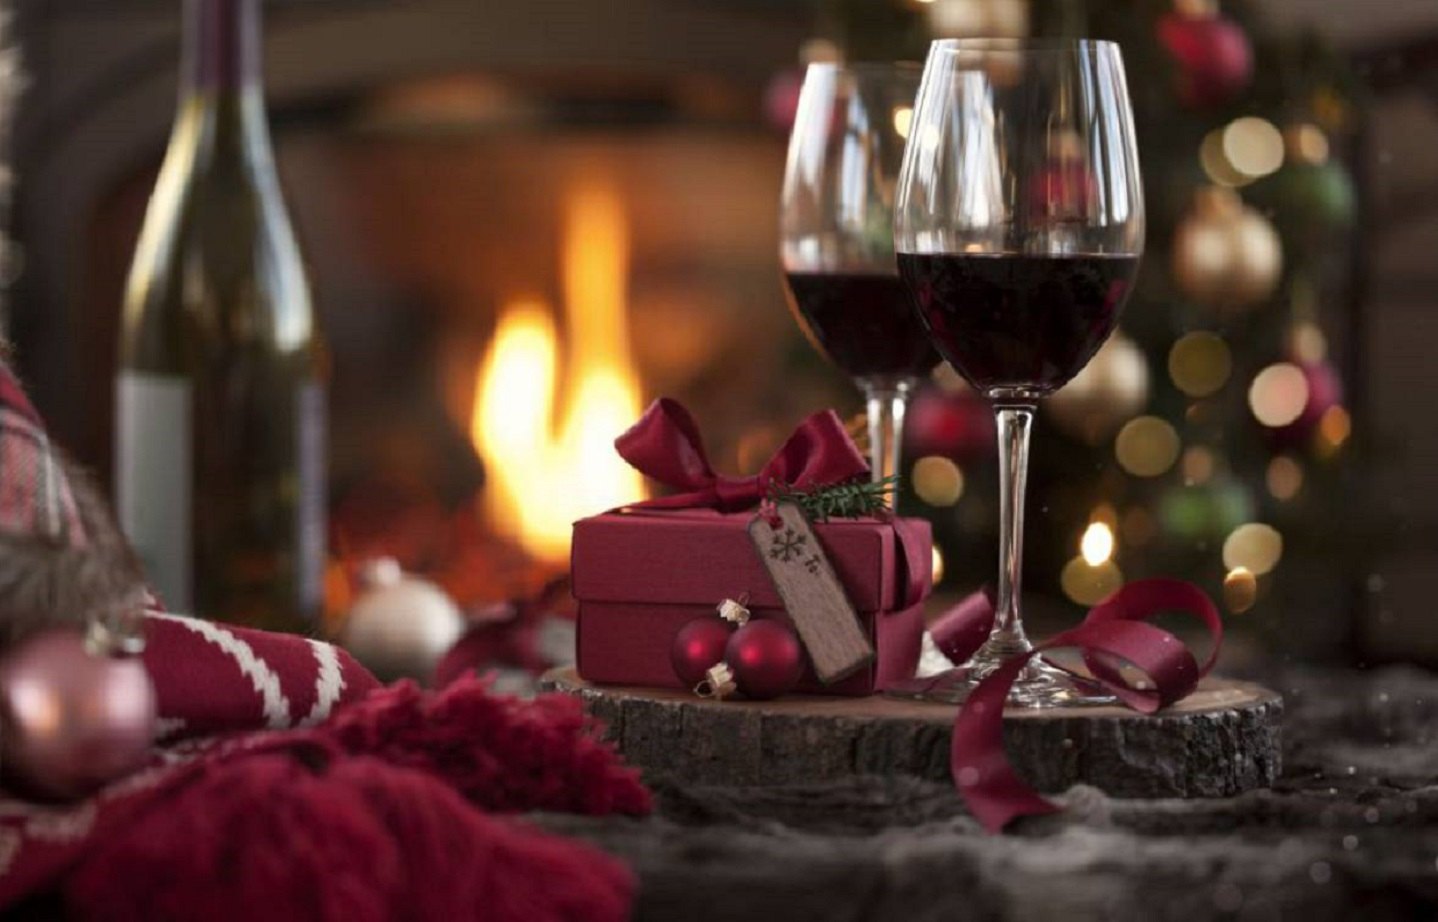 El millor vi blanc i el millor vi negre per maridar amb l'escudella i els canelons de Nadal